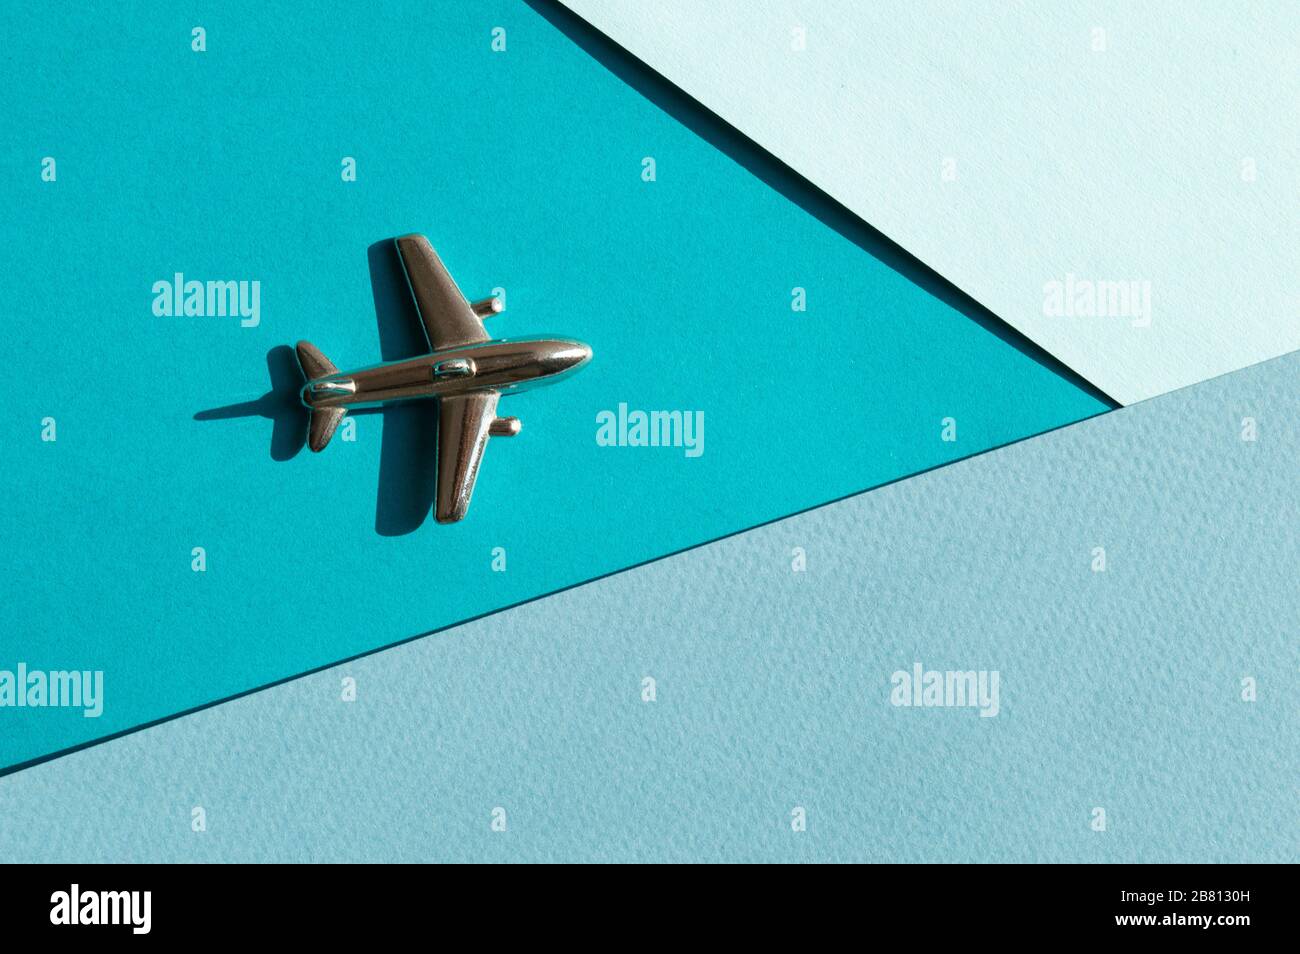 Metallfigur des kleinen Flugzeugs auf dem Turqouise- und hellblauen Geometriehintergrund. Flatlay, Draufsicht, Layout. Luftfahrtindustrie Stockfoto